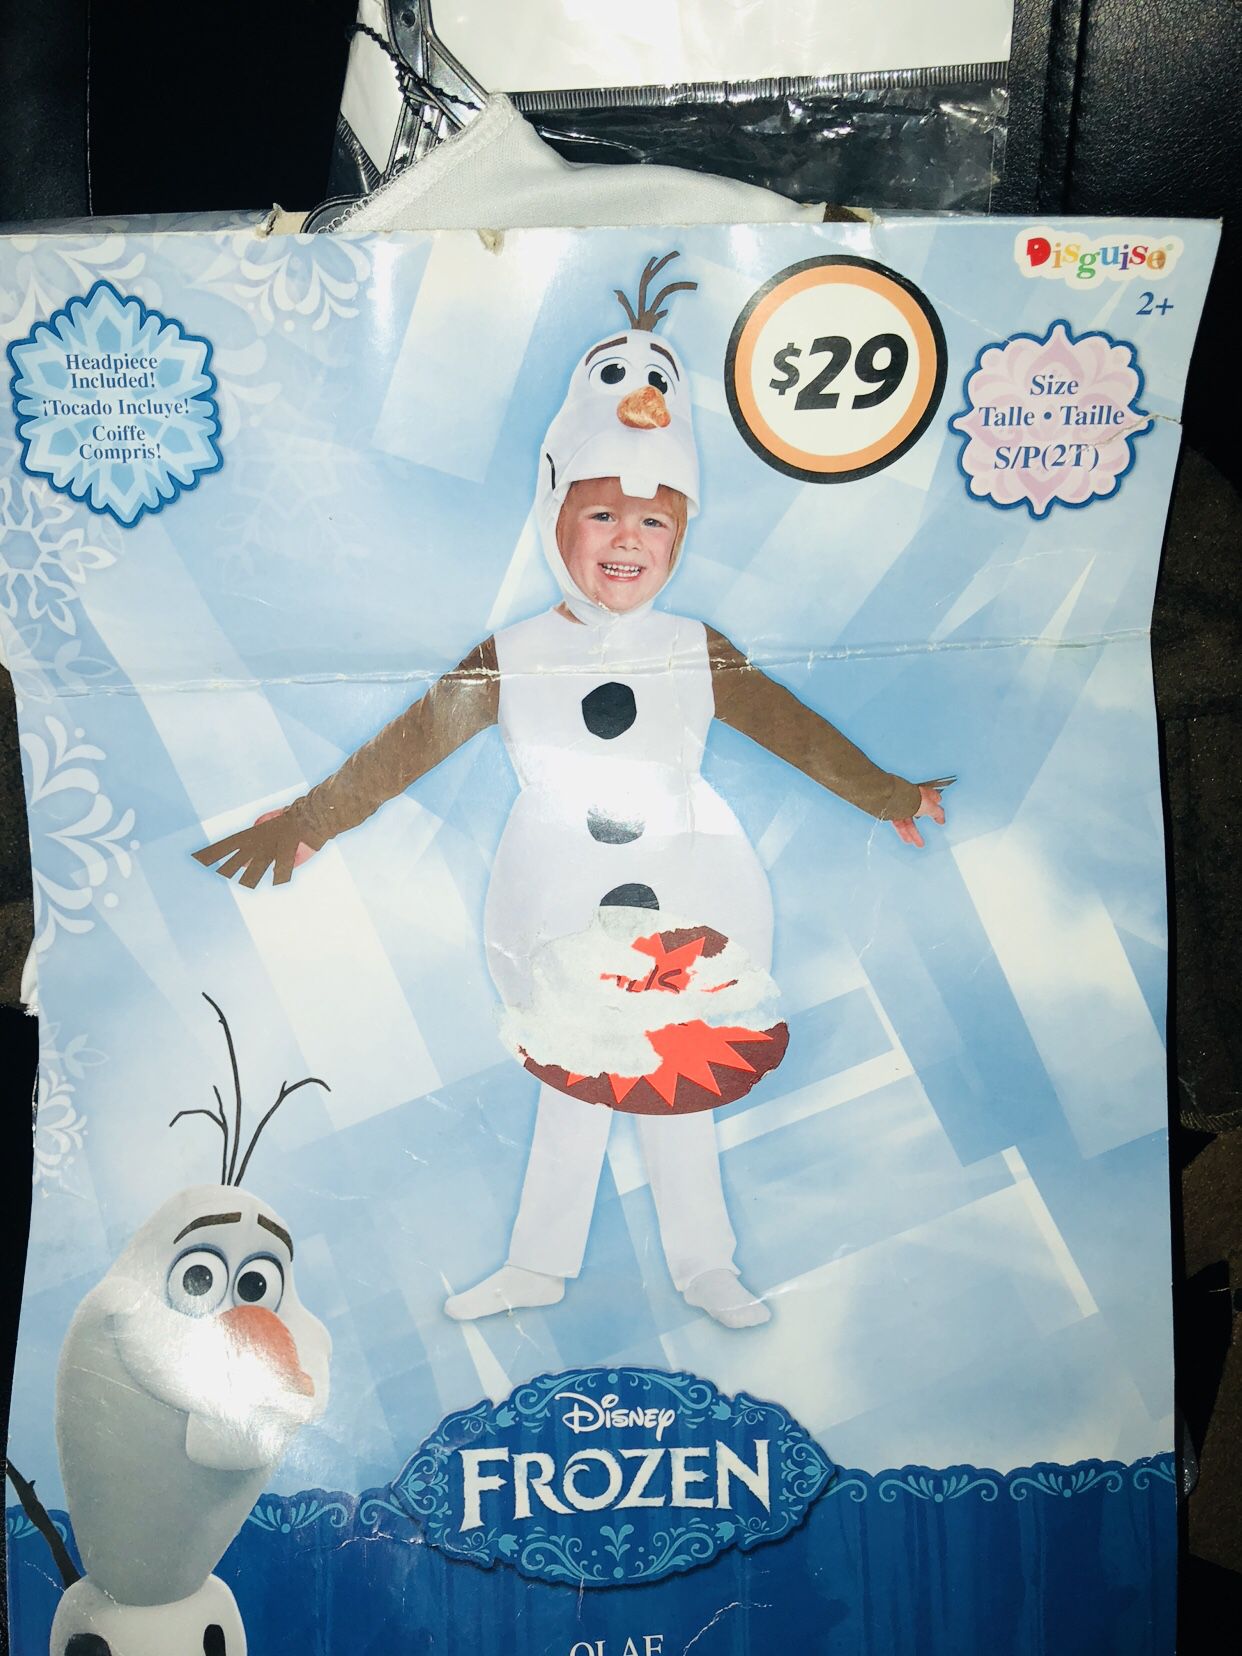 OLAF from Disney Frozen